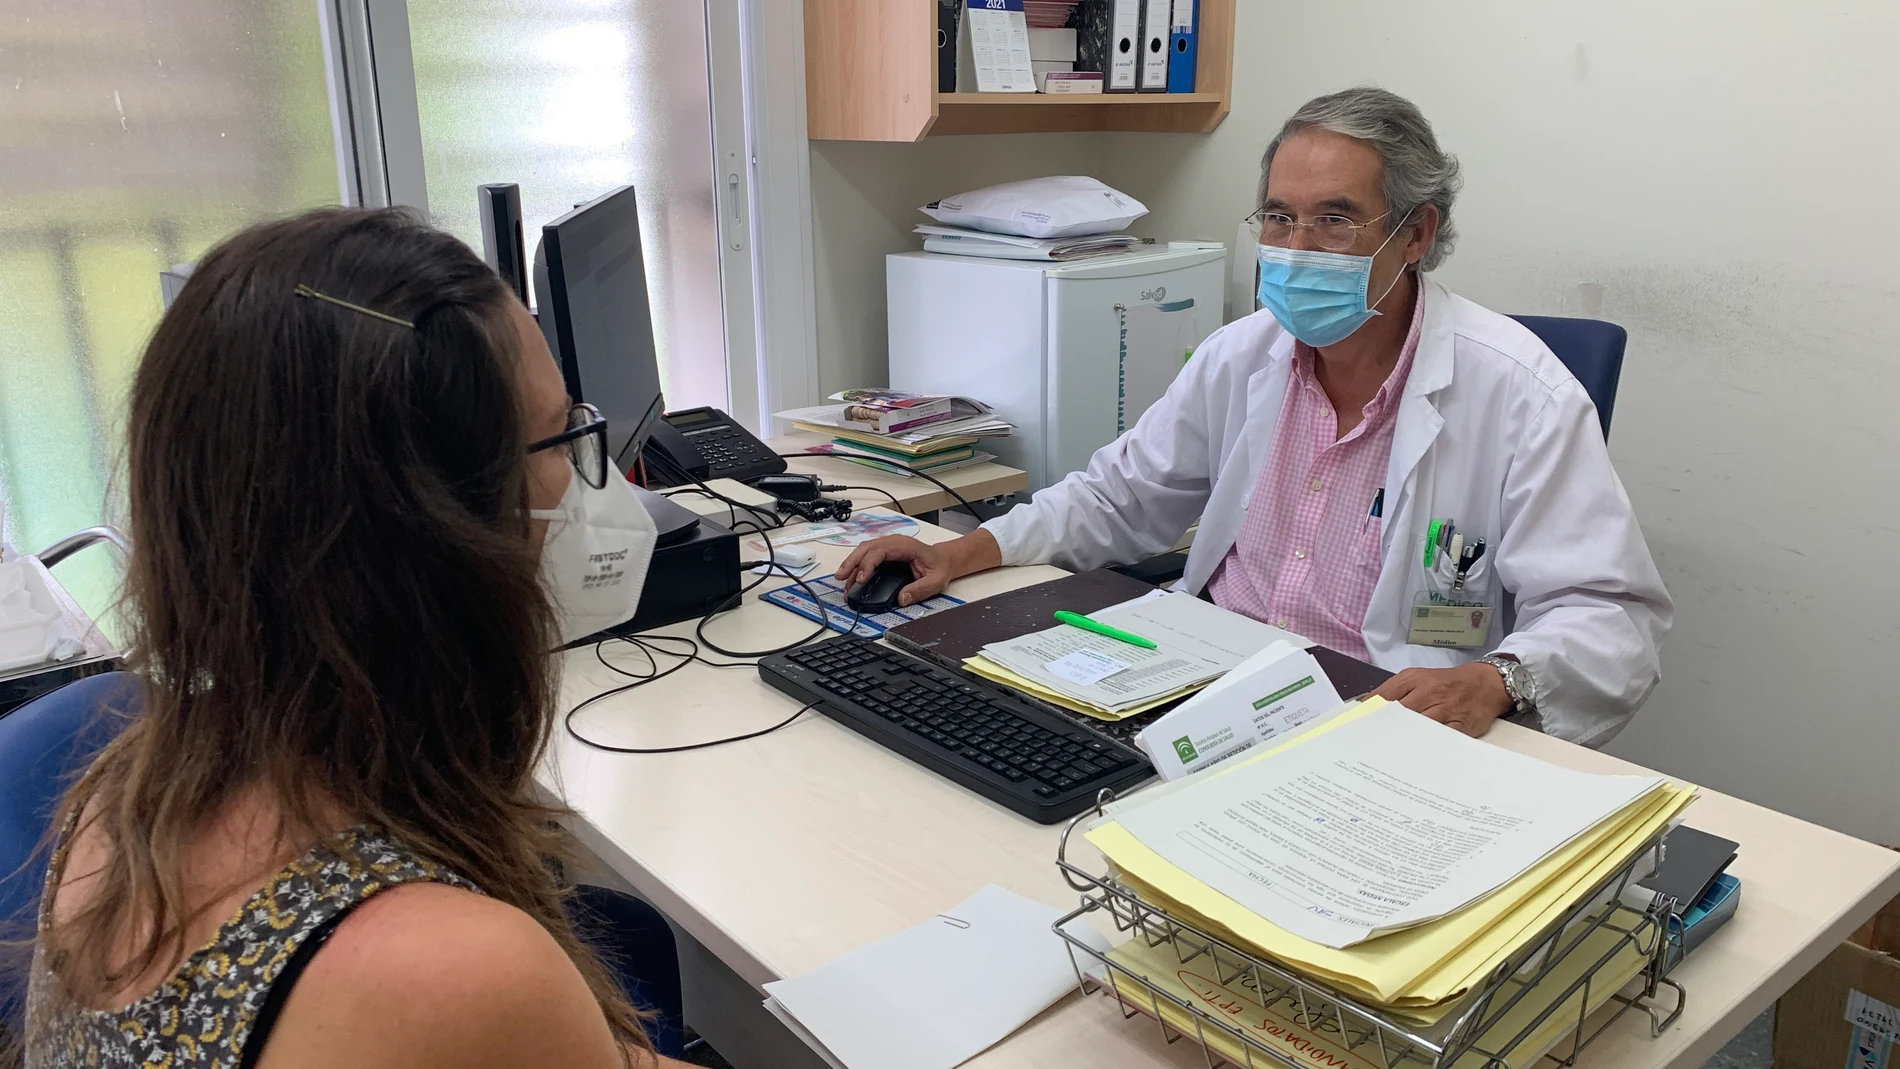 El doctor Vigueras atiende a una paciente en su consulta en el Hospital Macarena (Sevilla)